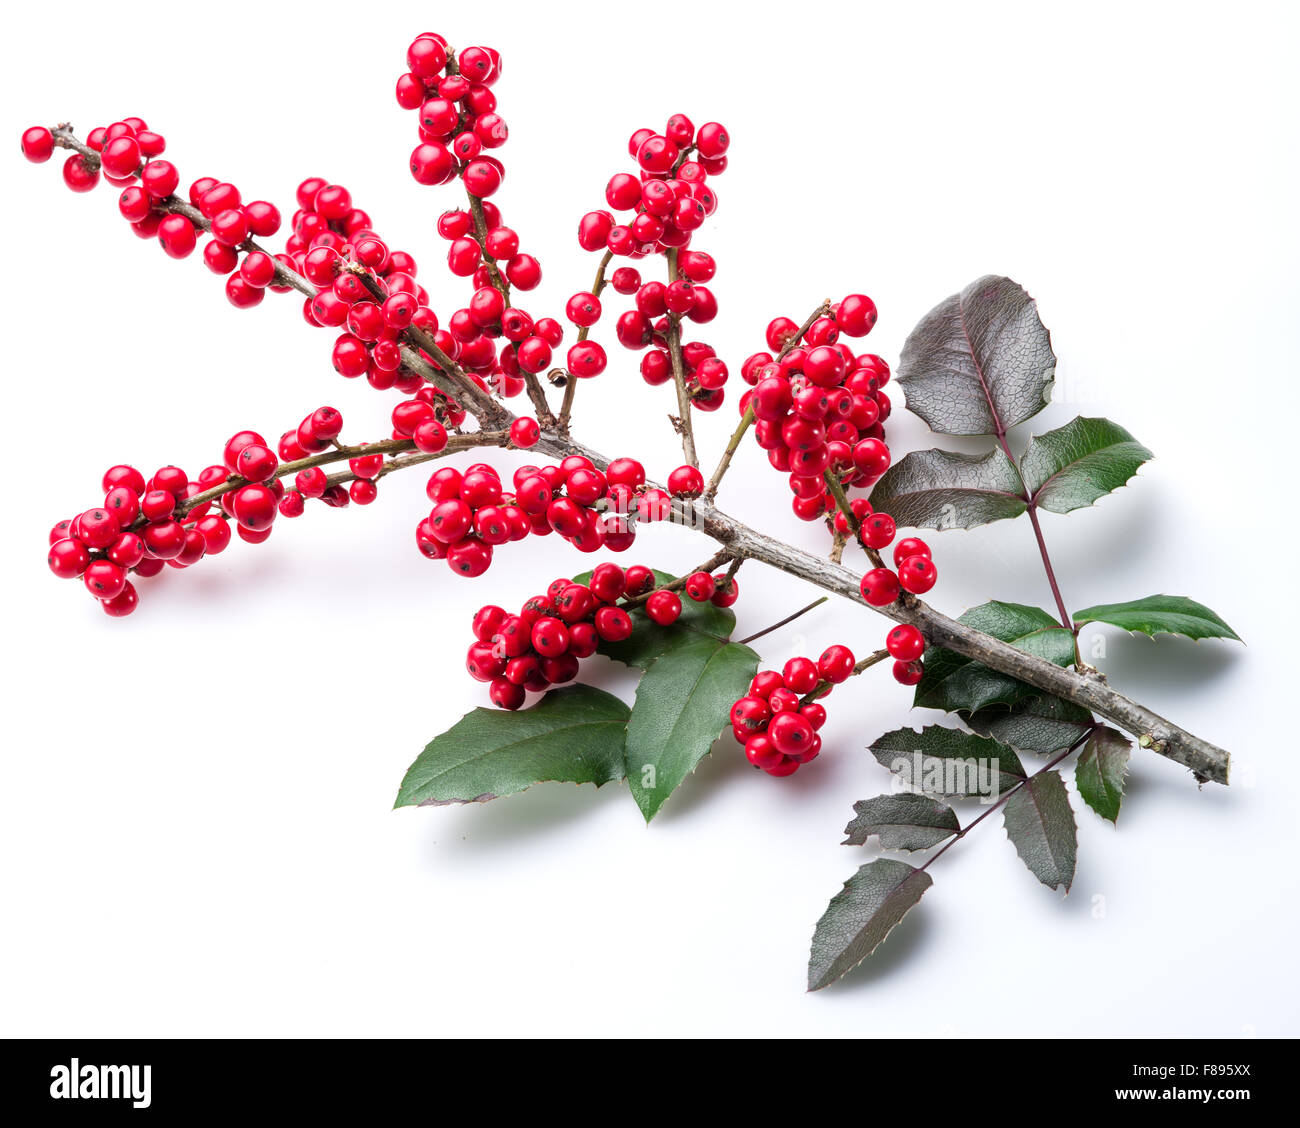 Stechpalme (Ilex) Blätter und Früchte auf einem weißen Hintergrund. Stockfoto